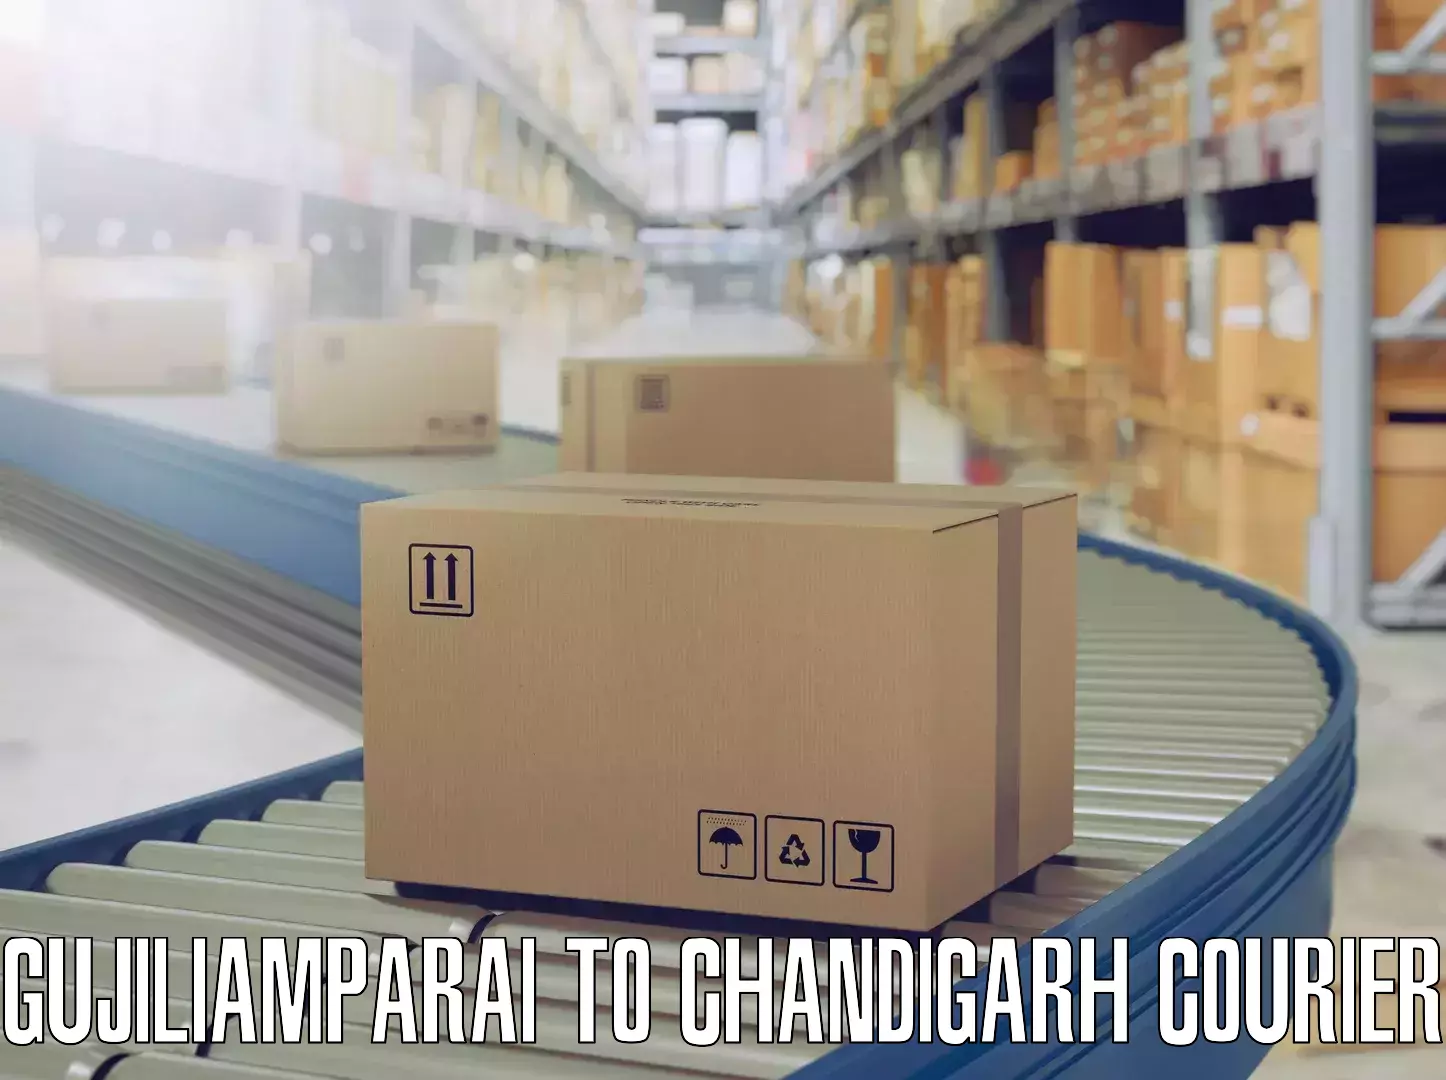 Furniture logistics in Gujiliamparai to Chandigarh